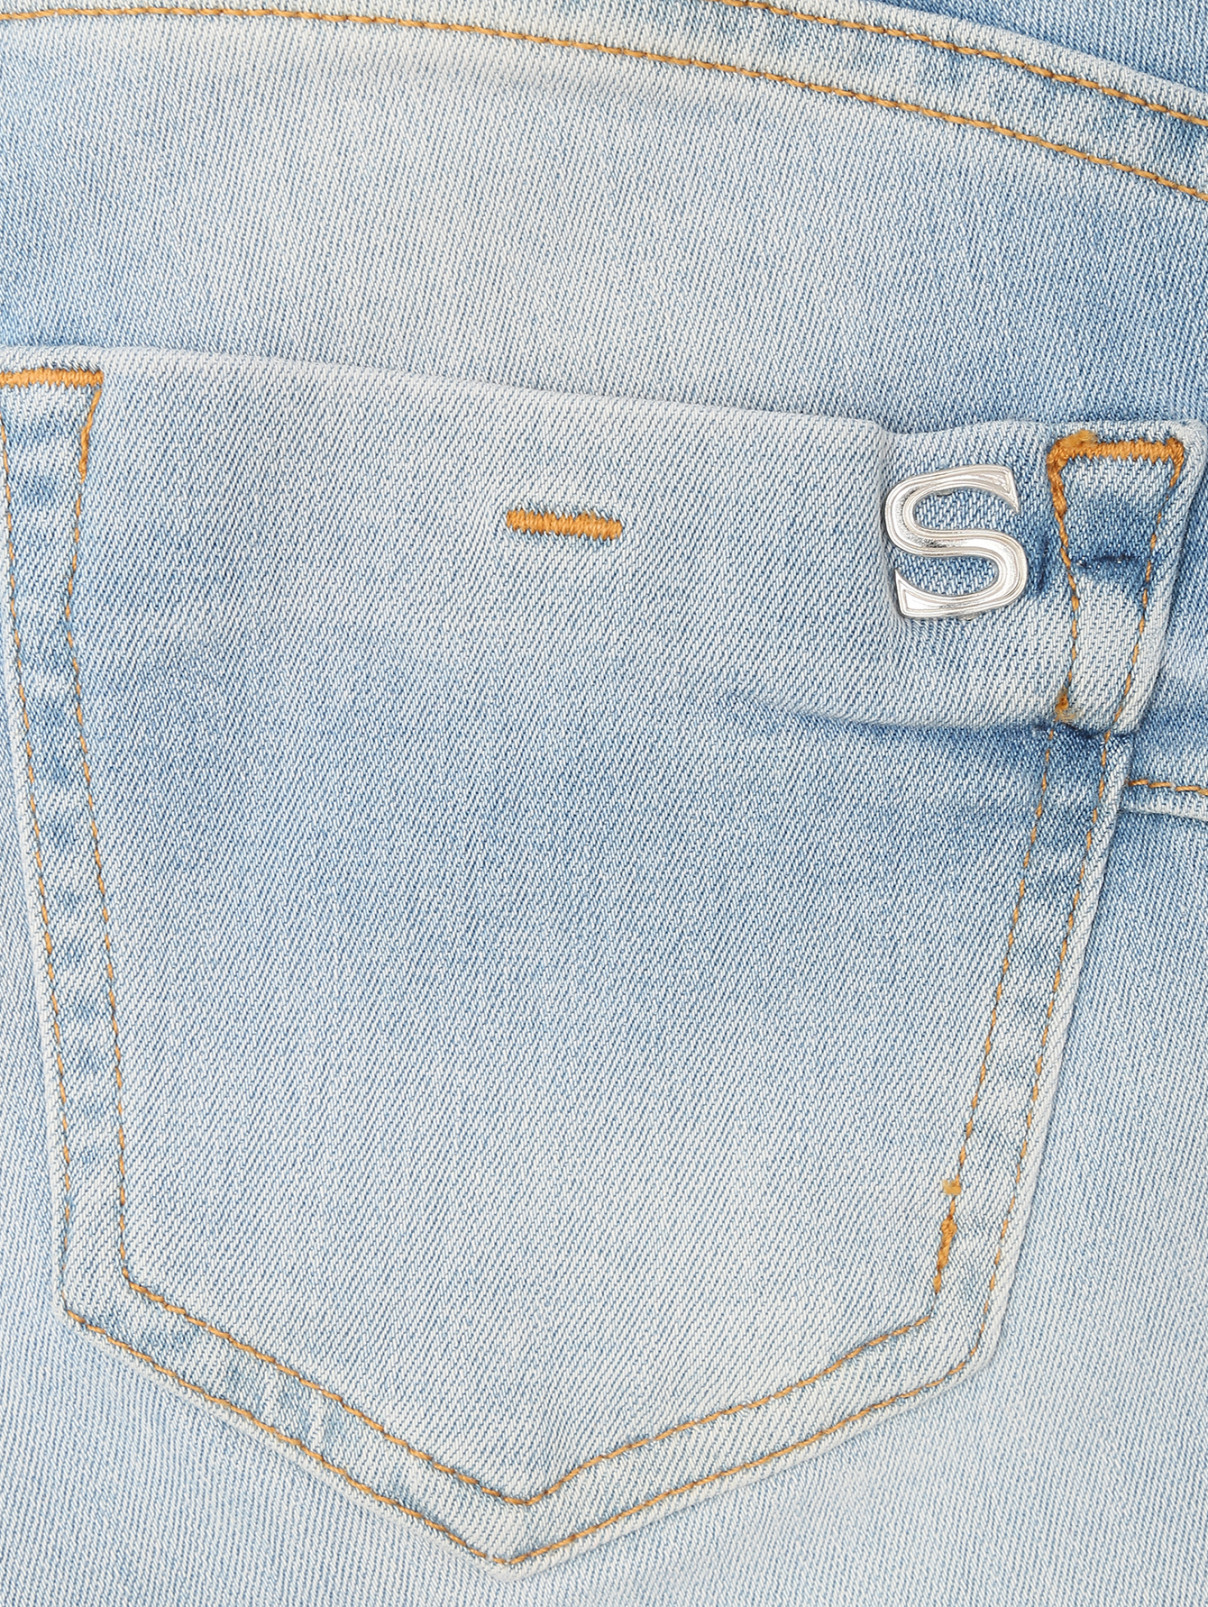 Зауженные джинсы из светлого денима SILVIAN HEACH  –  Деталь  – Цвет:  Синий